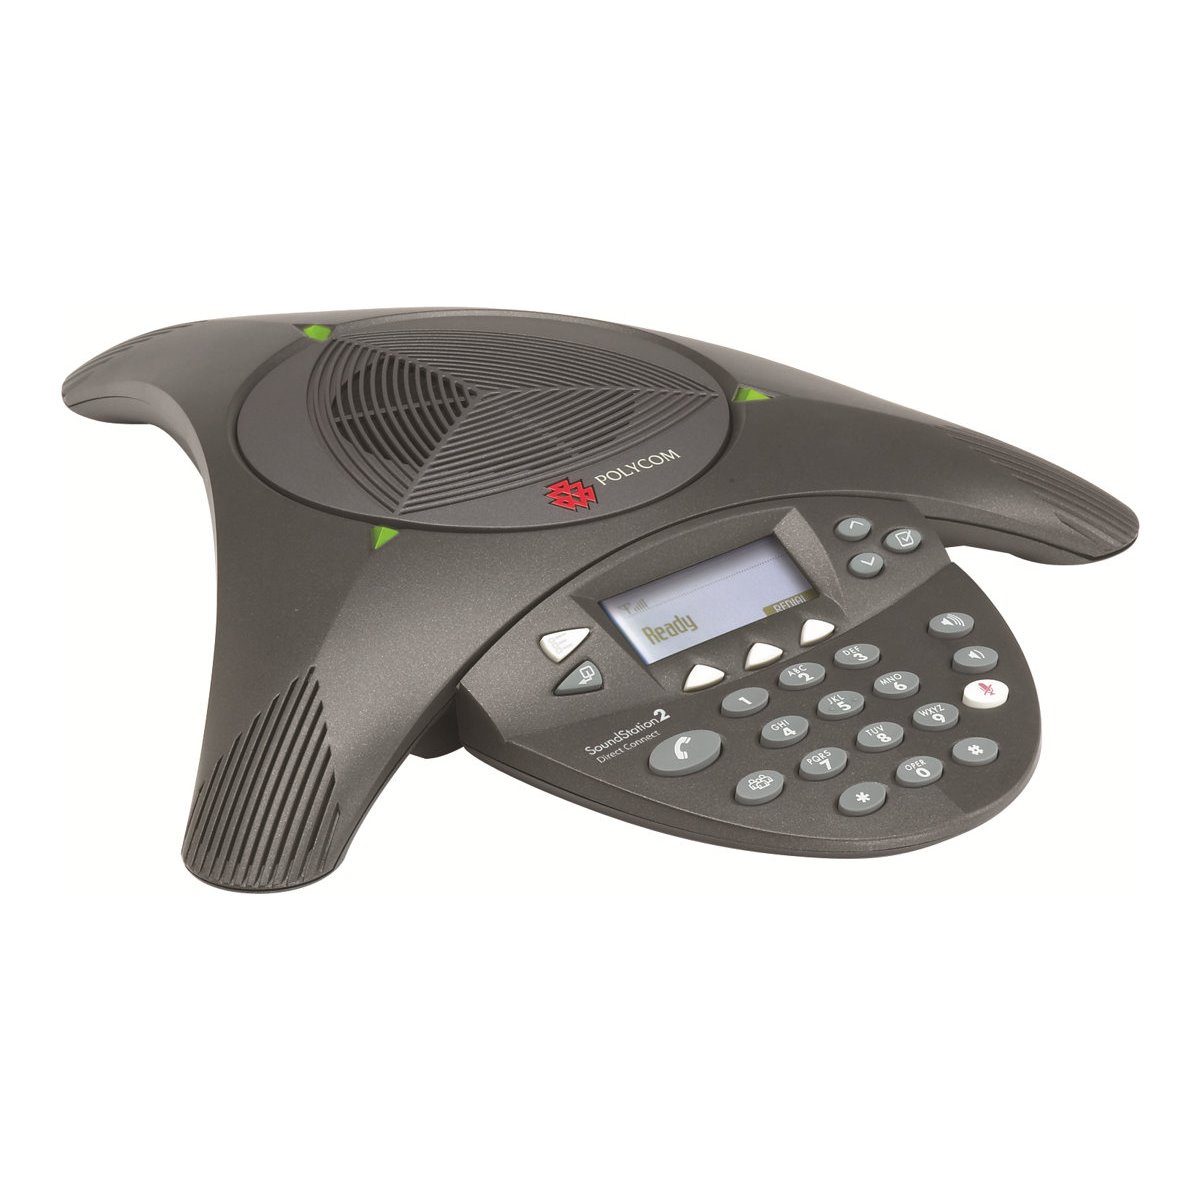 Poly SoundStation 2W Basic - Schnurloses Konferenztelefon mit Rufnummernanzeige - 2.4 GHz